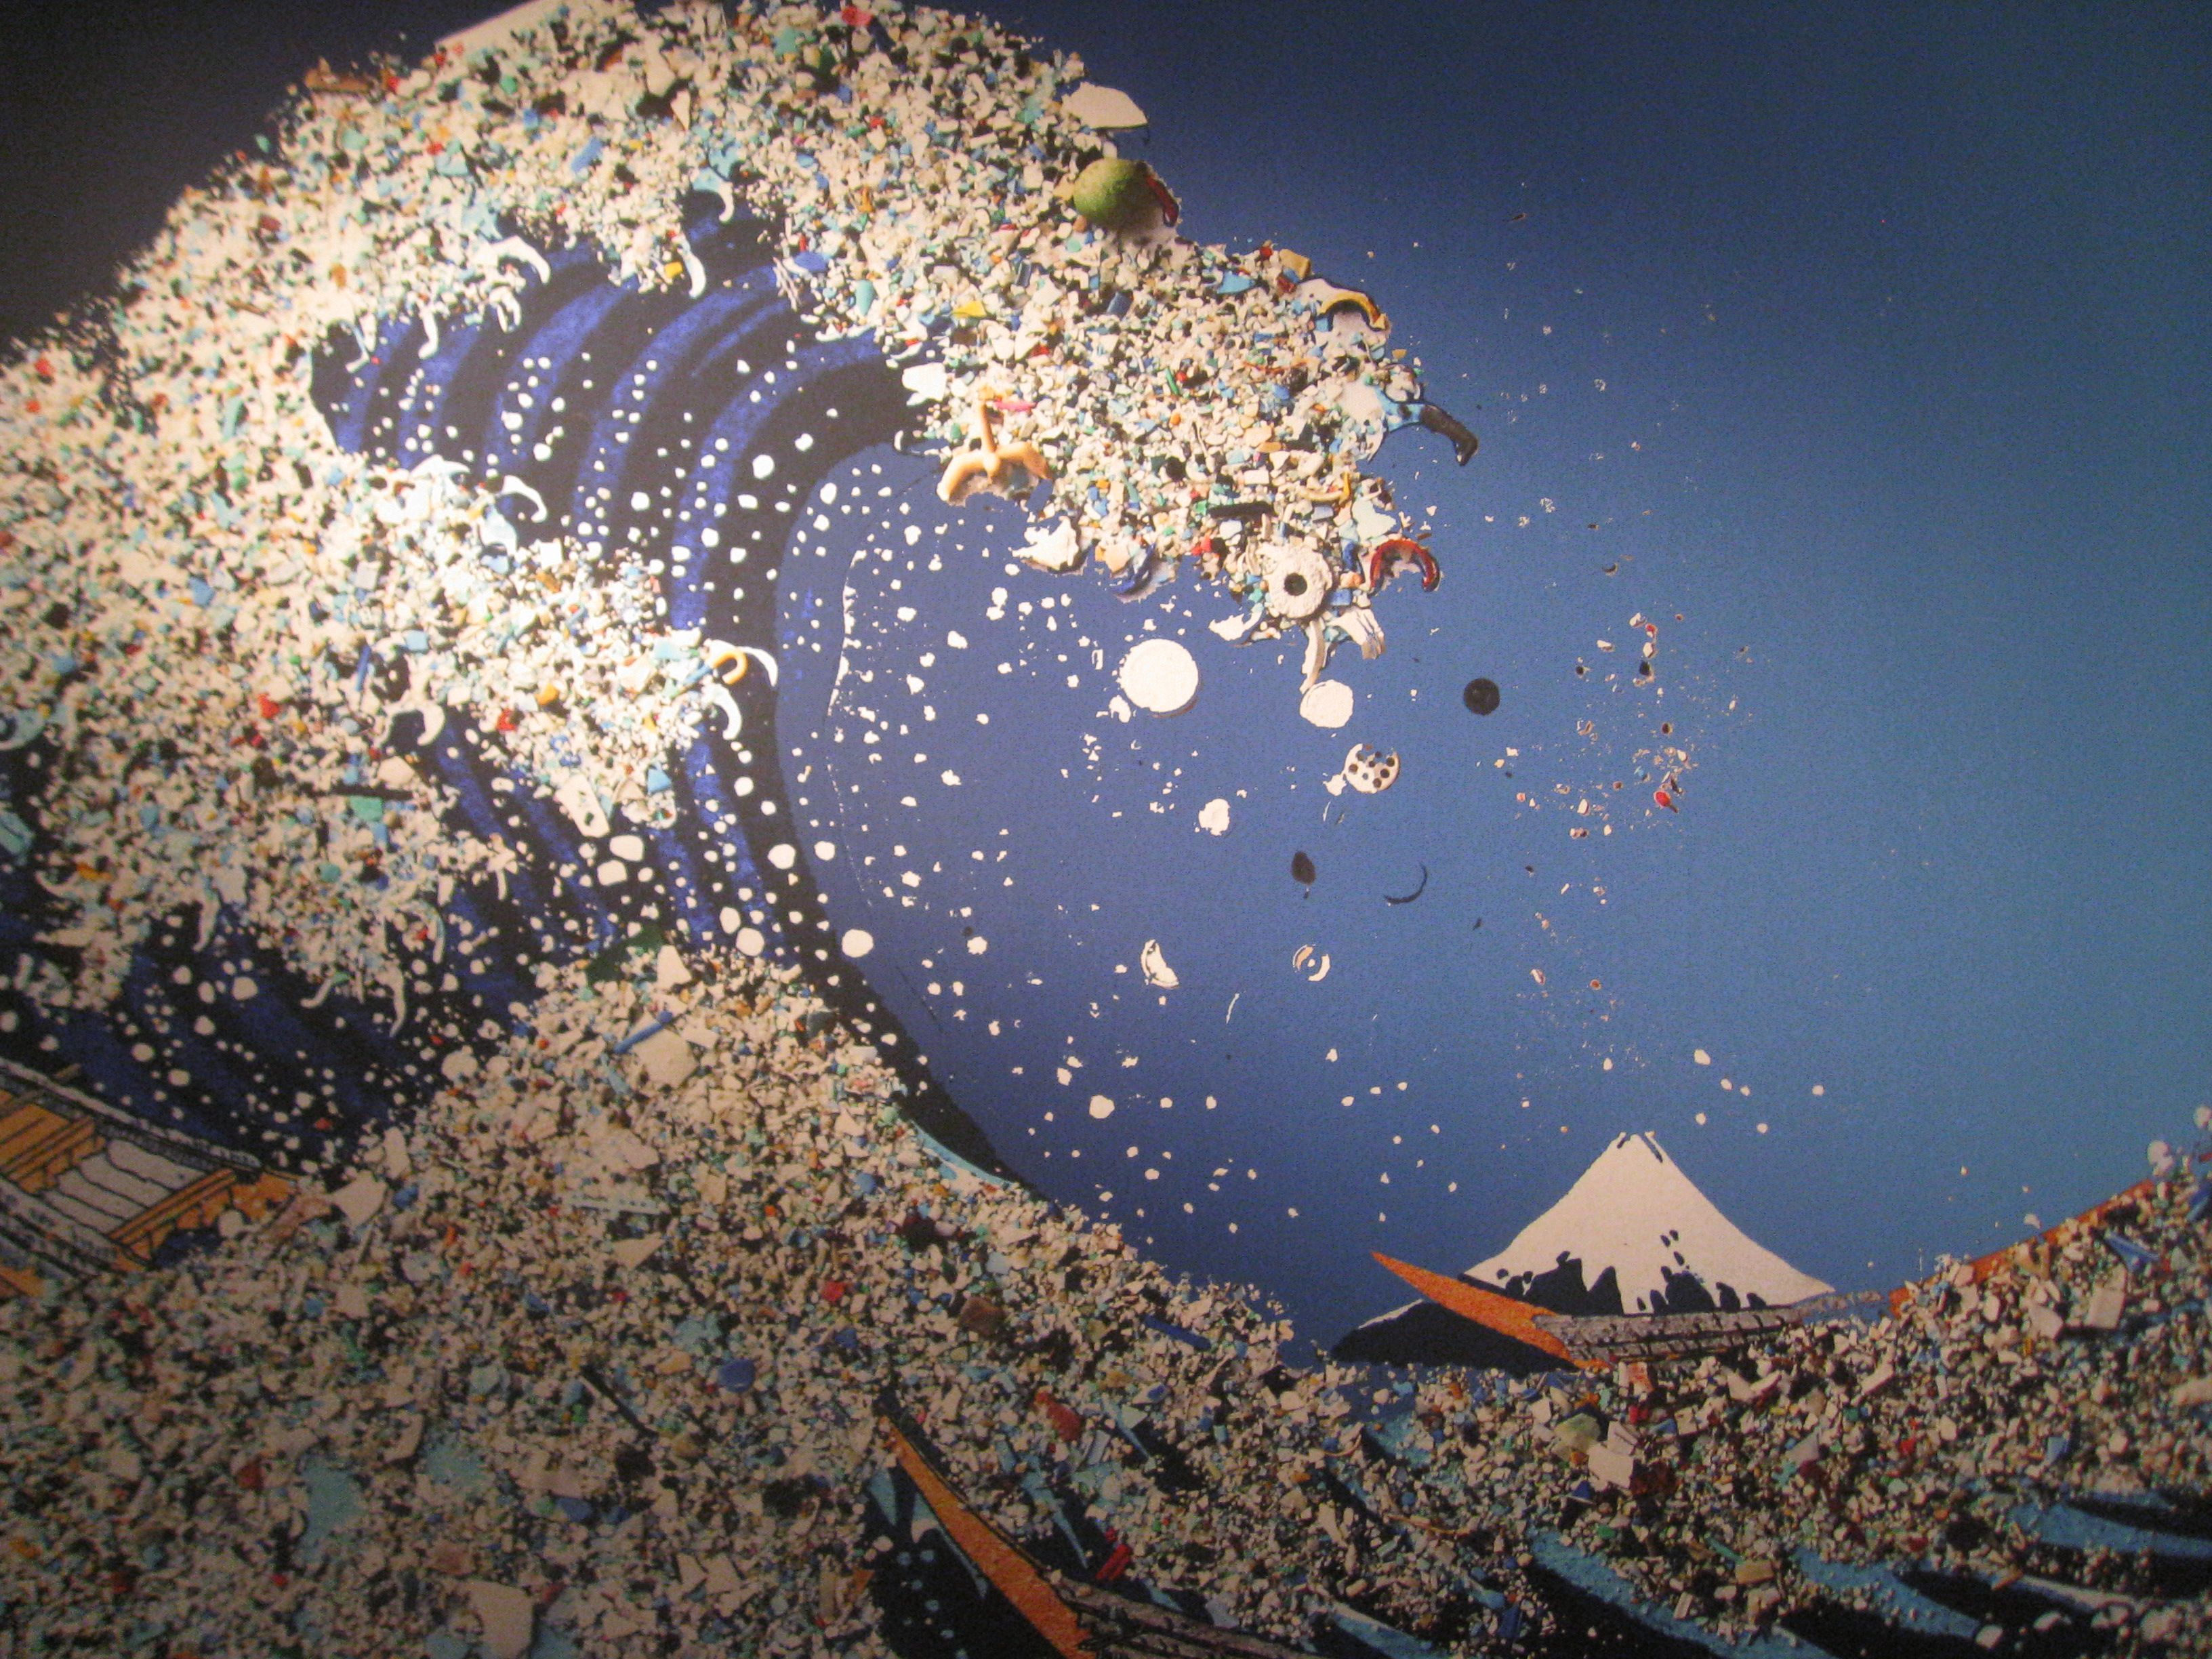 горы мусора в океане